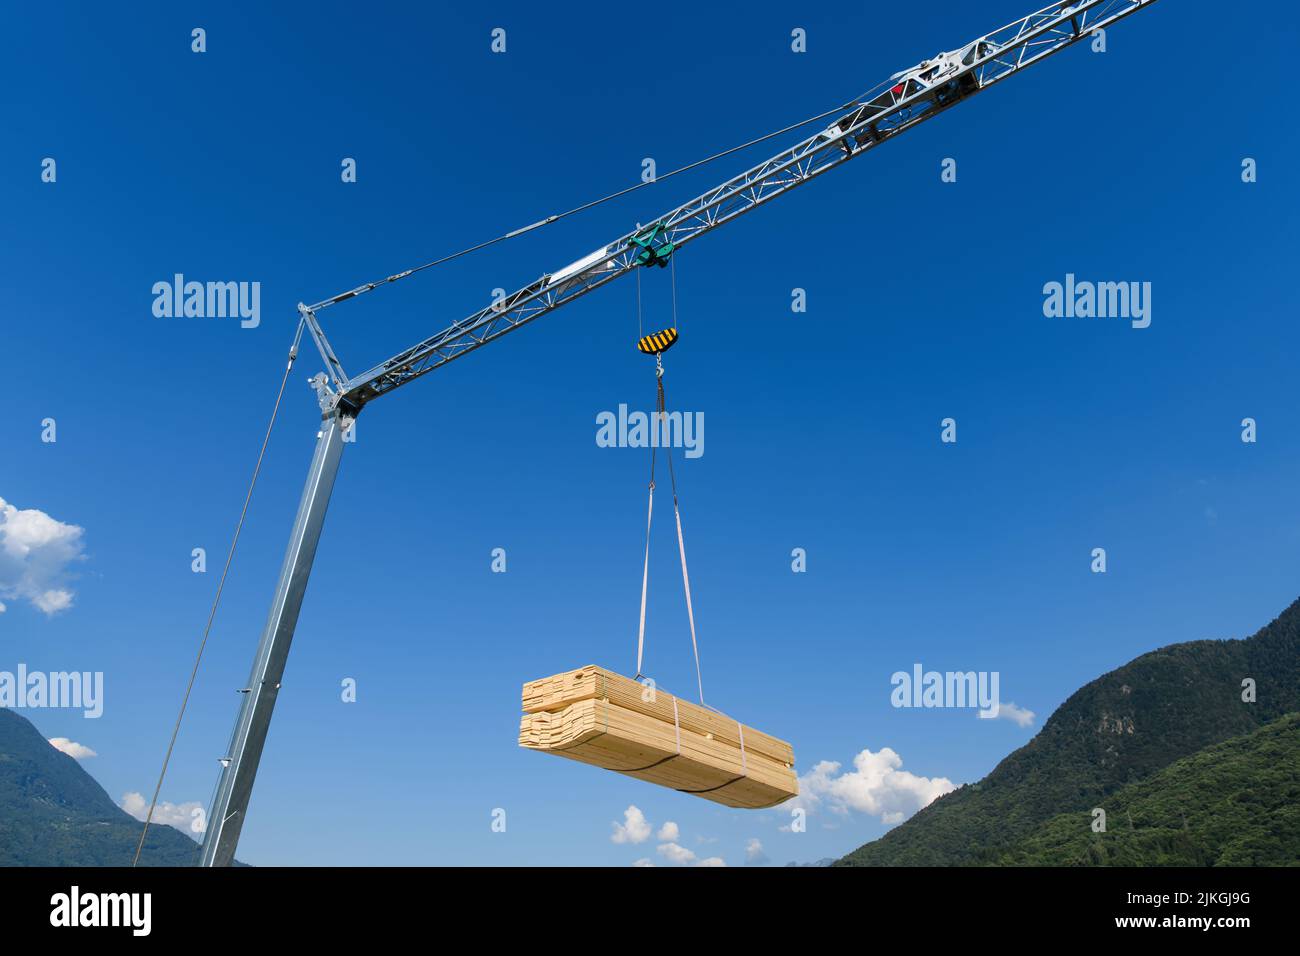 Grue de construction avec charge suspendue de planche en bois sur un ciel bleu Banque D'Images